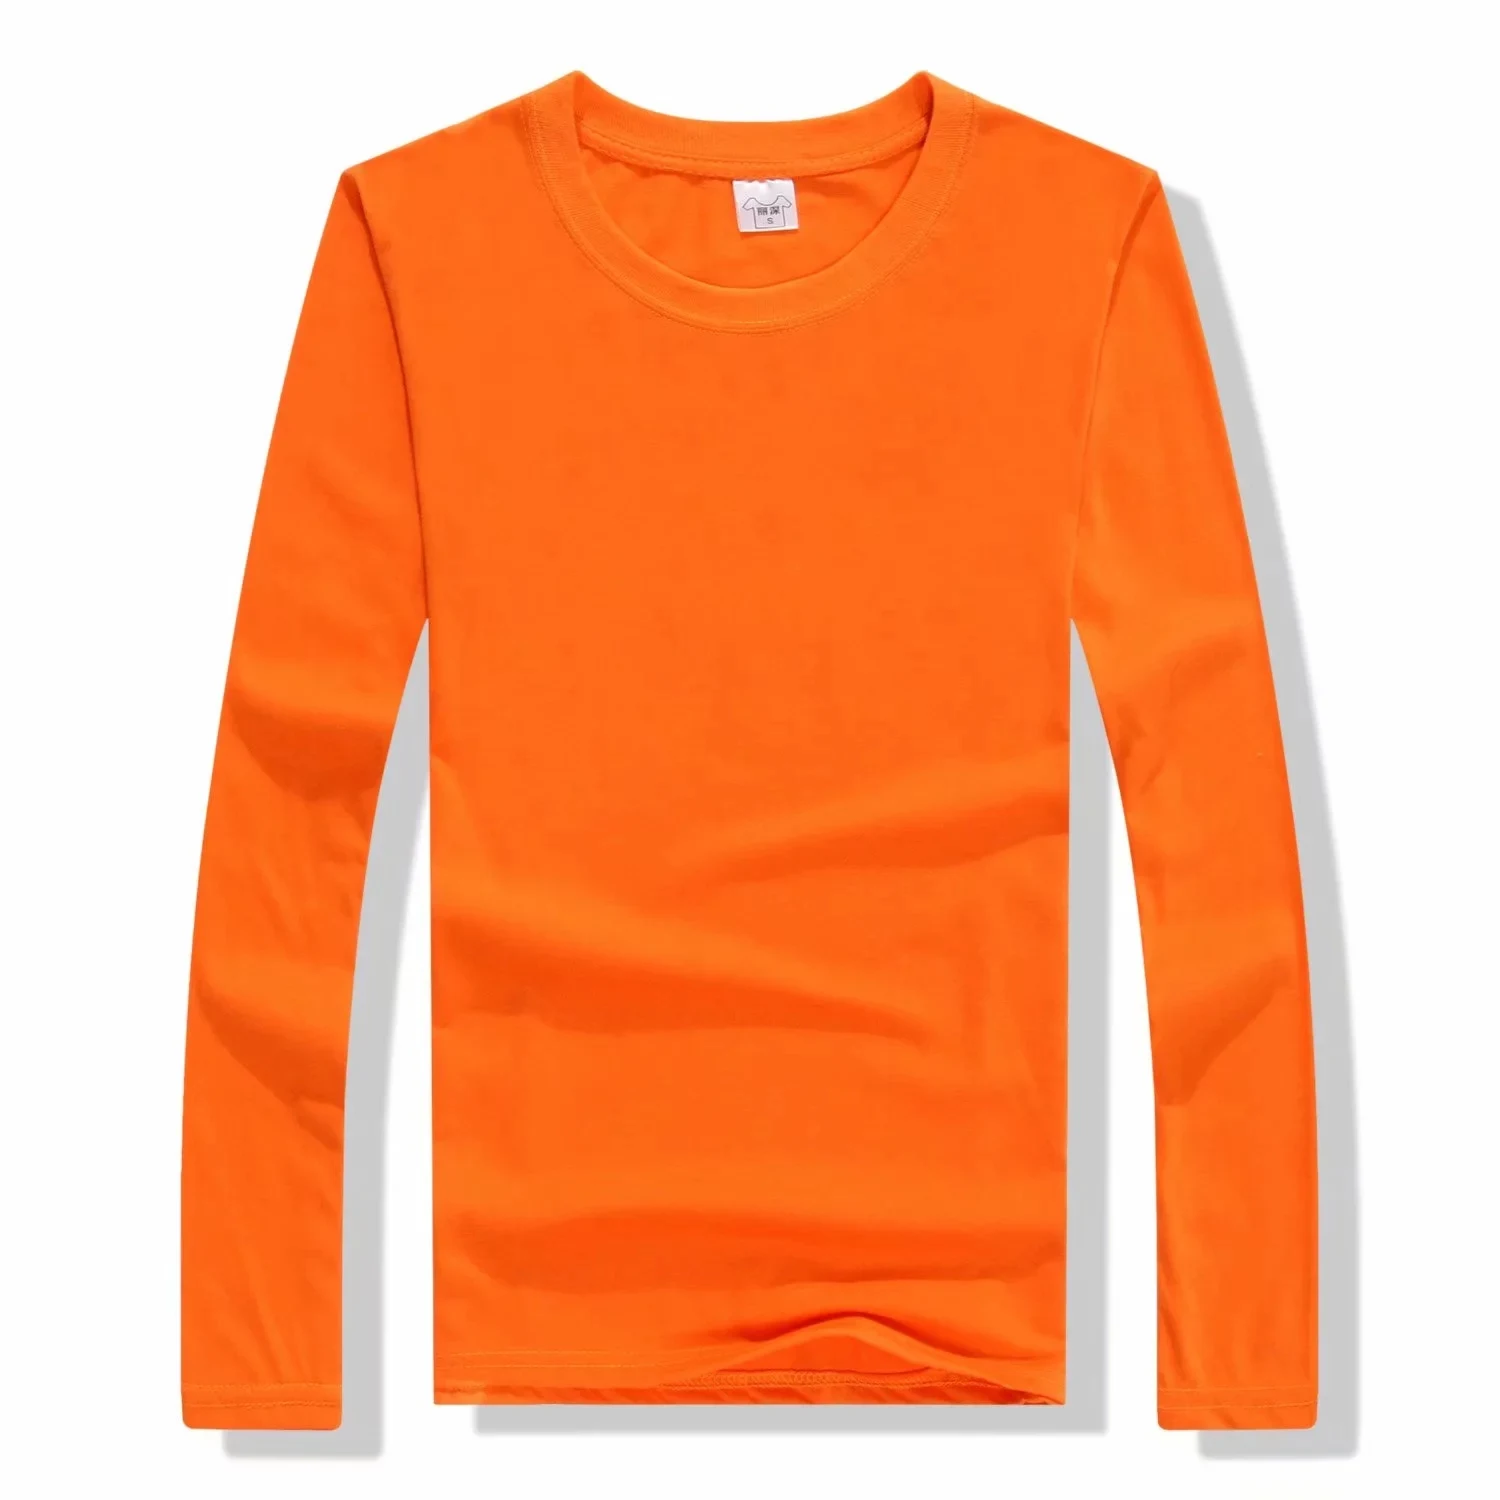 Футболки с принтом на заказ, хлопковые однотонные топы майки с длинными рукавами, мужские повседневные футболки, дизайнерские футболки для пар, семейная команда - Цвет: Оранжевый